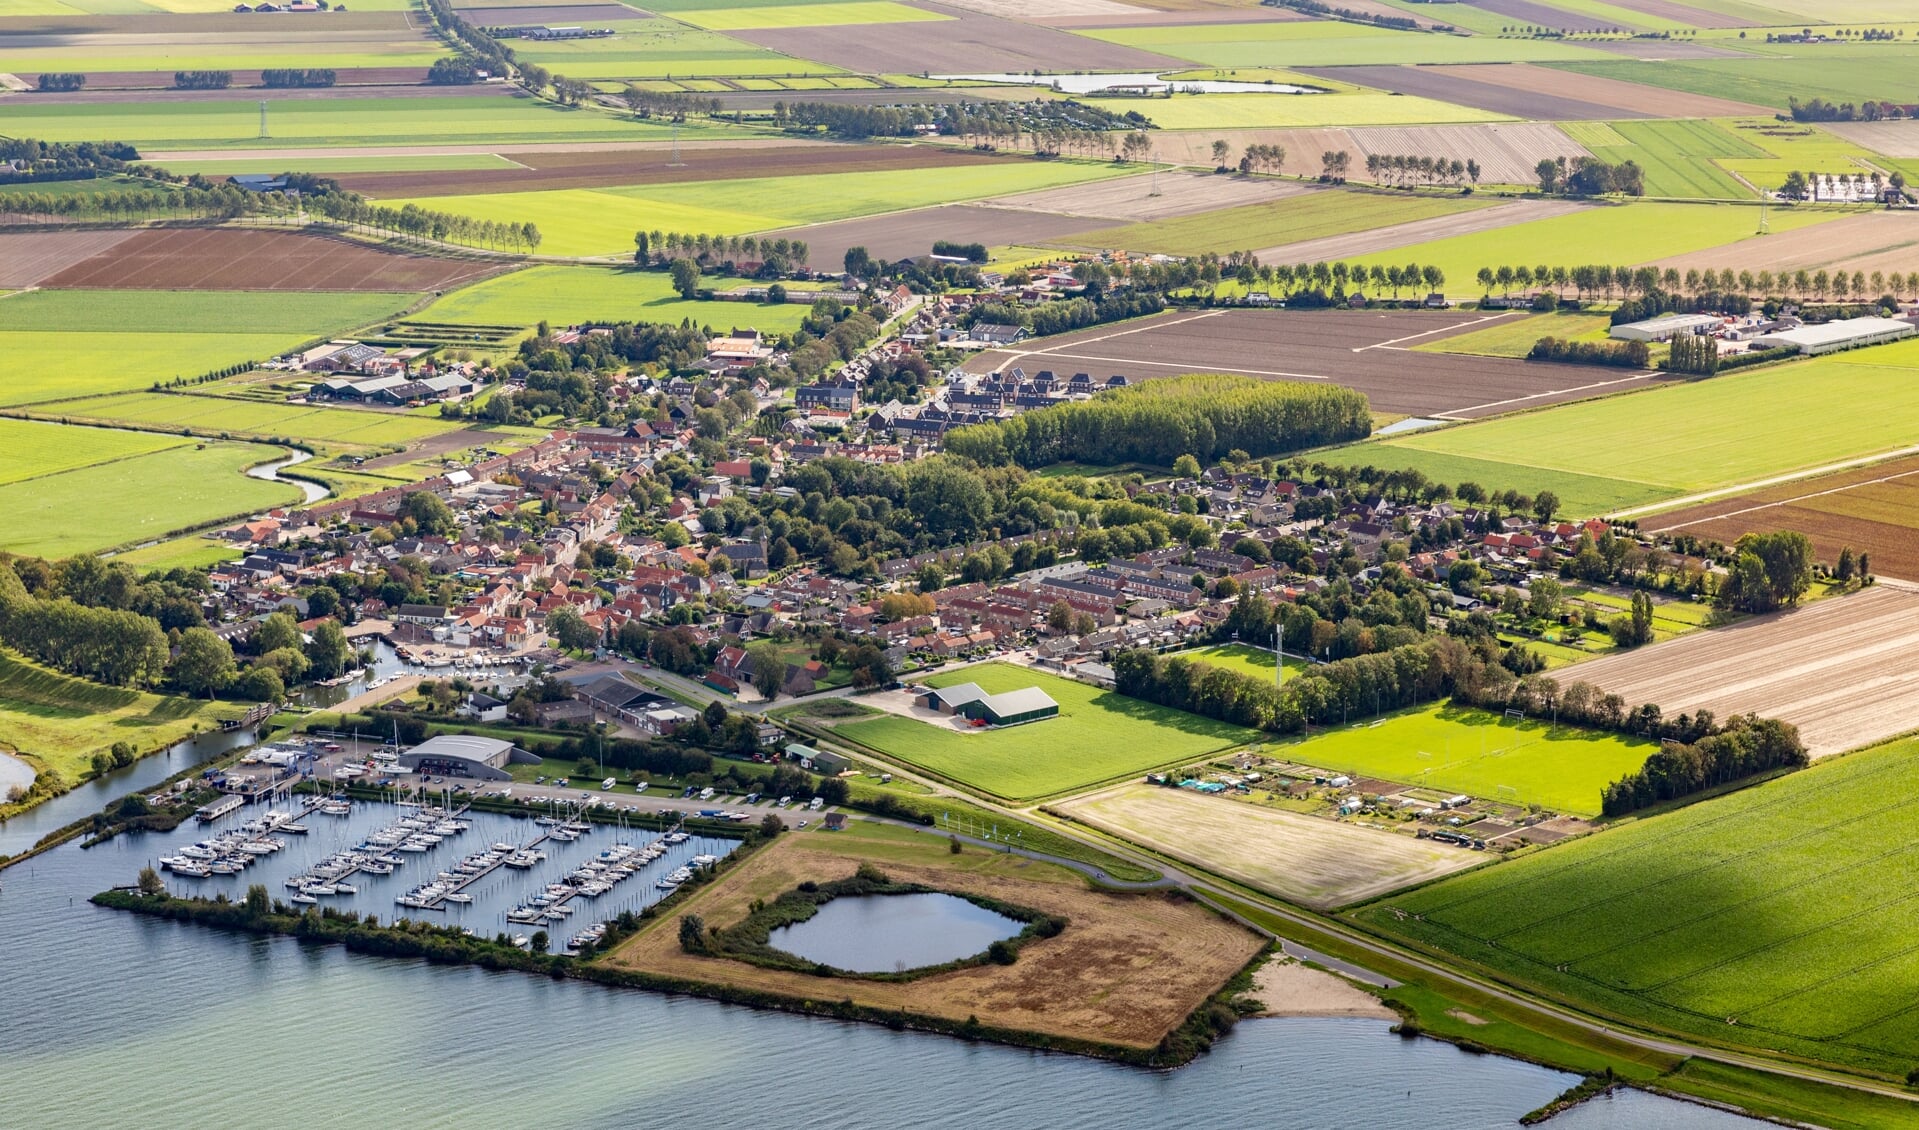 De werkzaamheden aan de Haringvlietbrug hebben mogelijk grote invloed op de jachthaven van Stad aan 't Haringvliet (Foto: Topview Luchtfotografie).